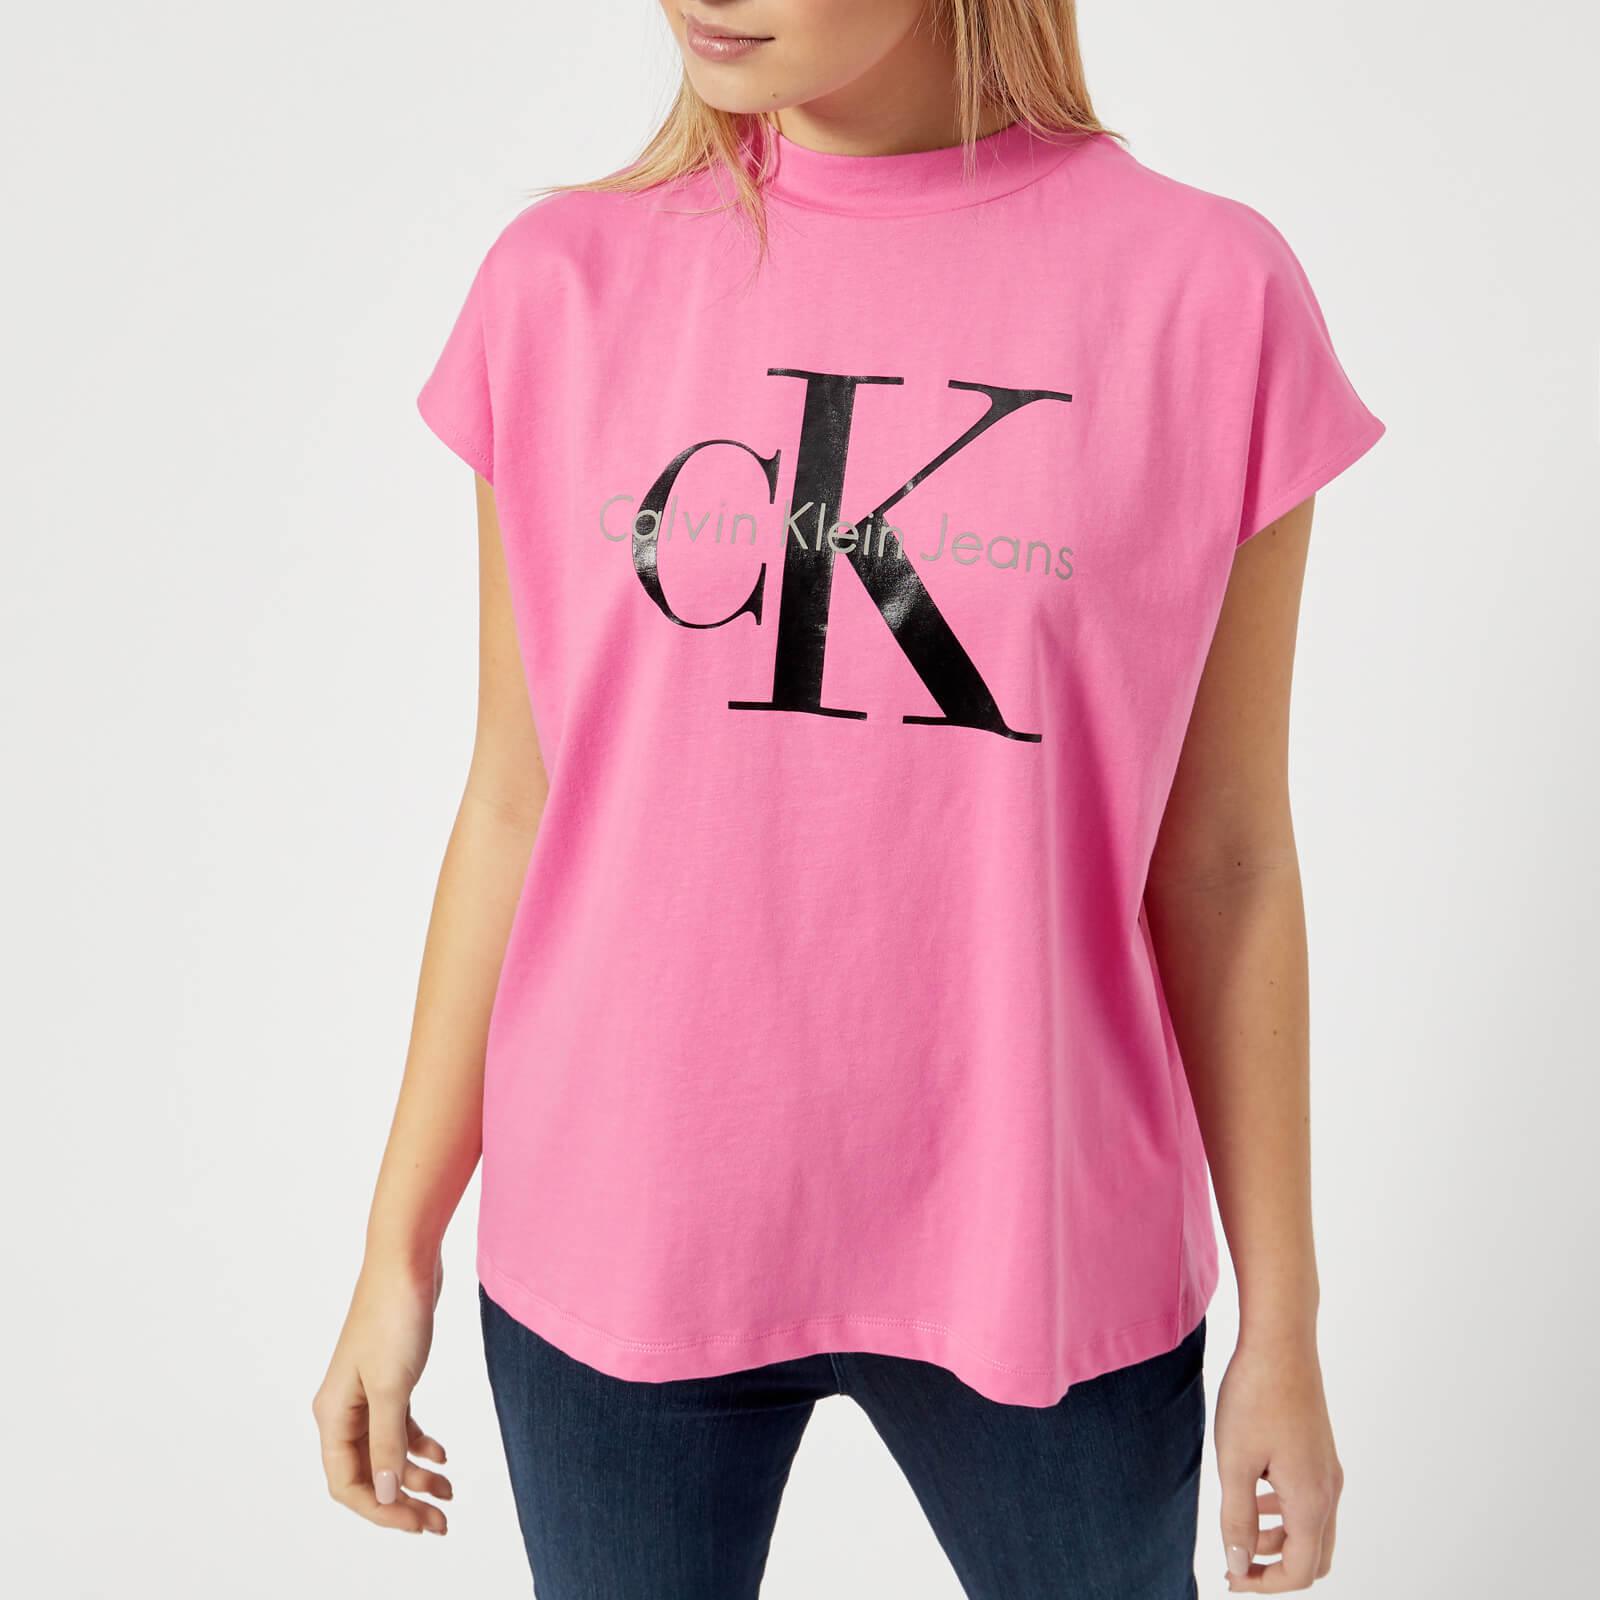 Pink Calvin Klein Tshirt Online, SAVE 54%.